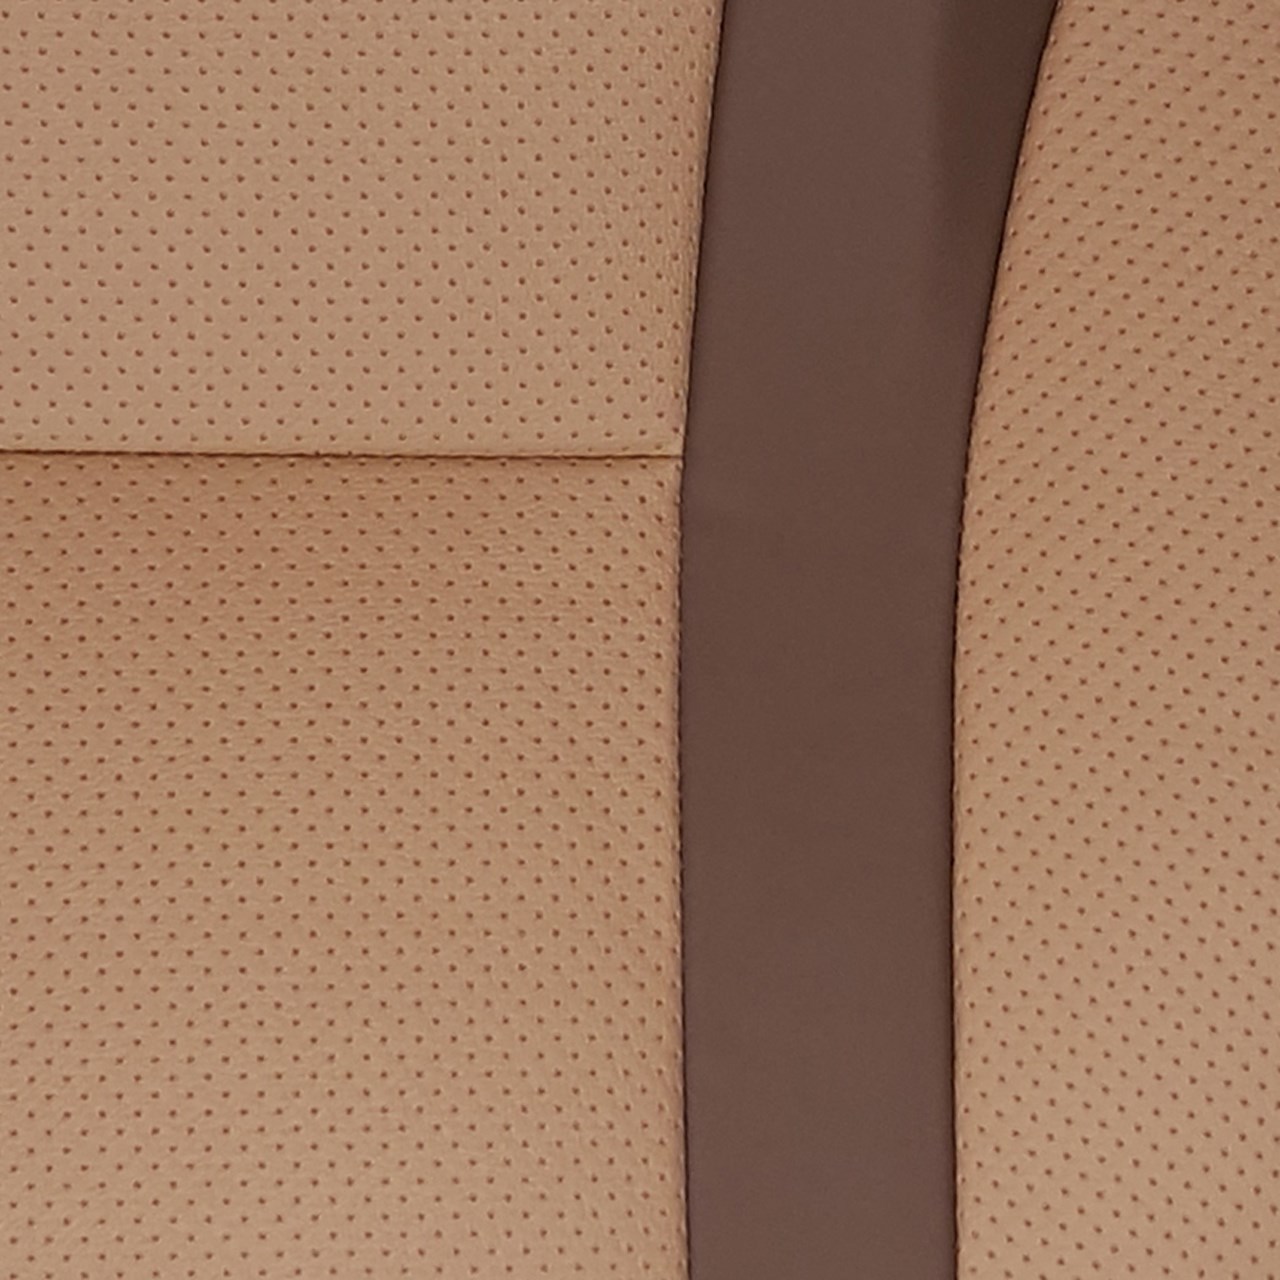 روکش صندلی خودرو  مدل 302117 مناسب برای پژو پرشیا